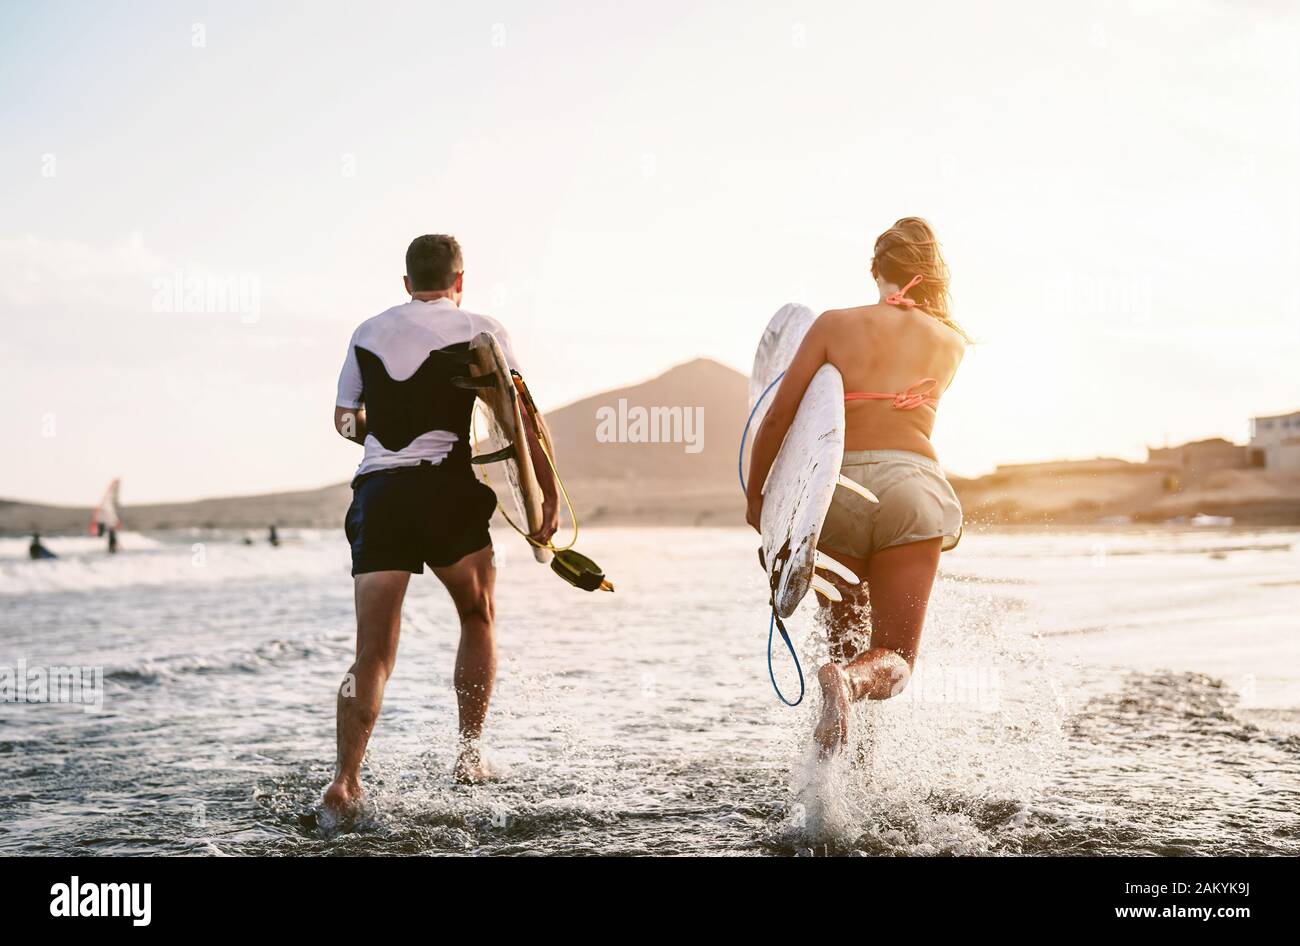 Fröhliche Surfer, die bei Sonnenuntergang im Wasser laufen - Junge Paare haben Spaß beim Surfen im Meer - Lifestyle-Konzept für Extremsport und Jugendkultur Stockfoto